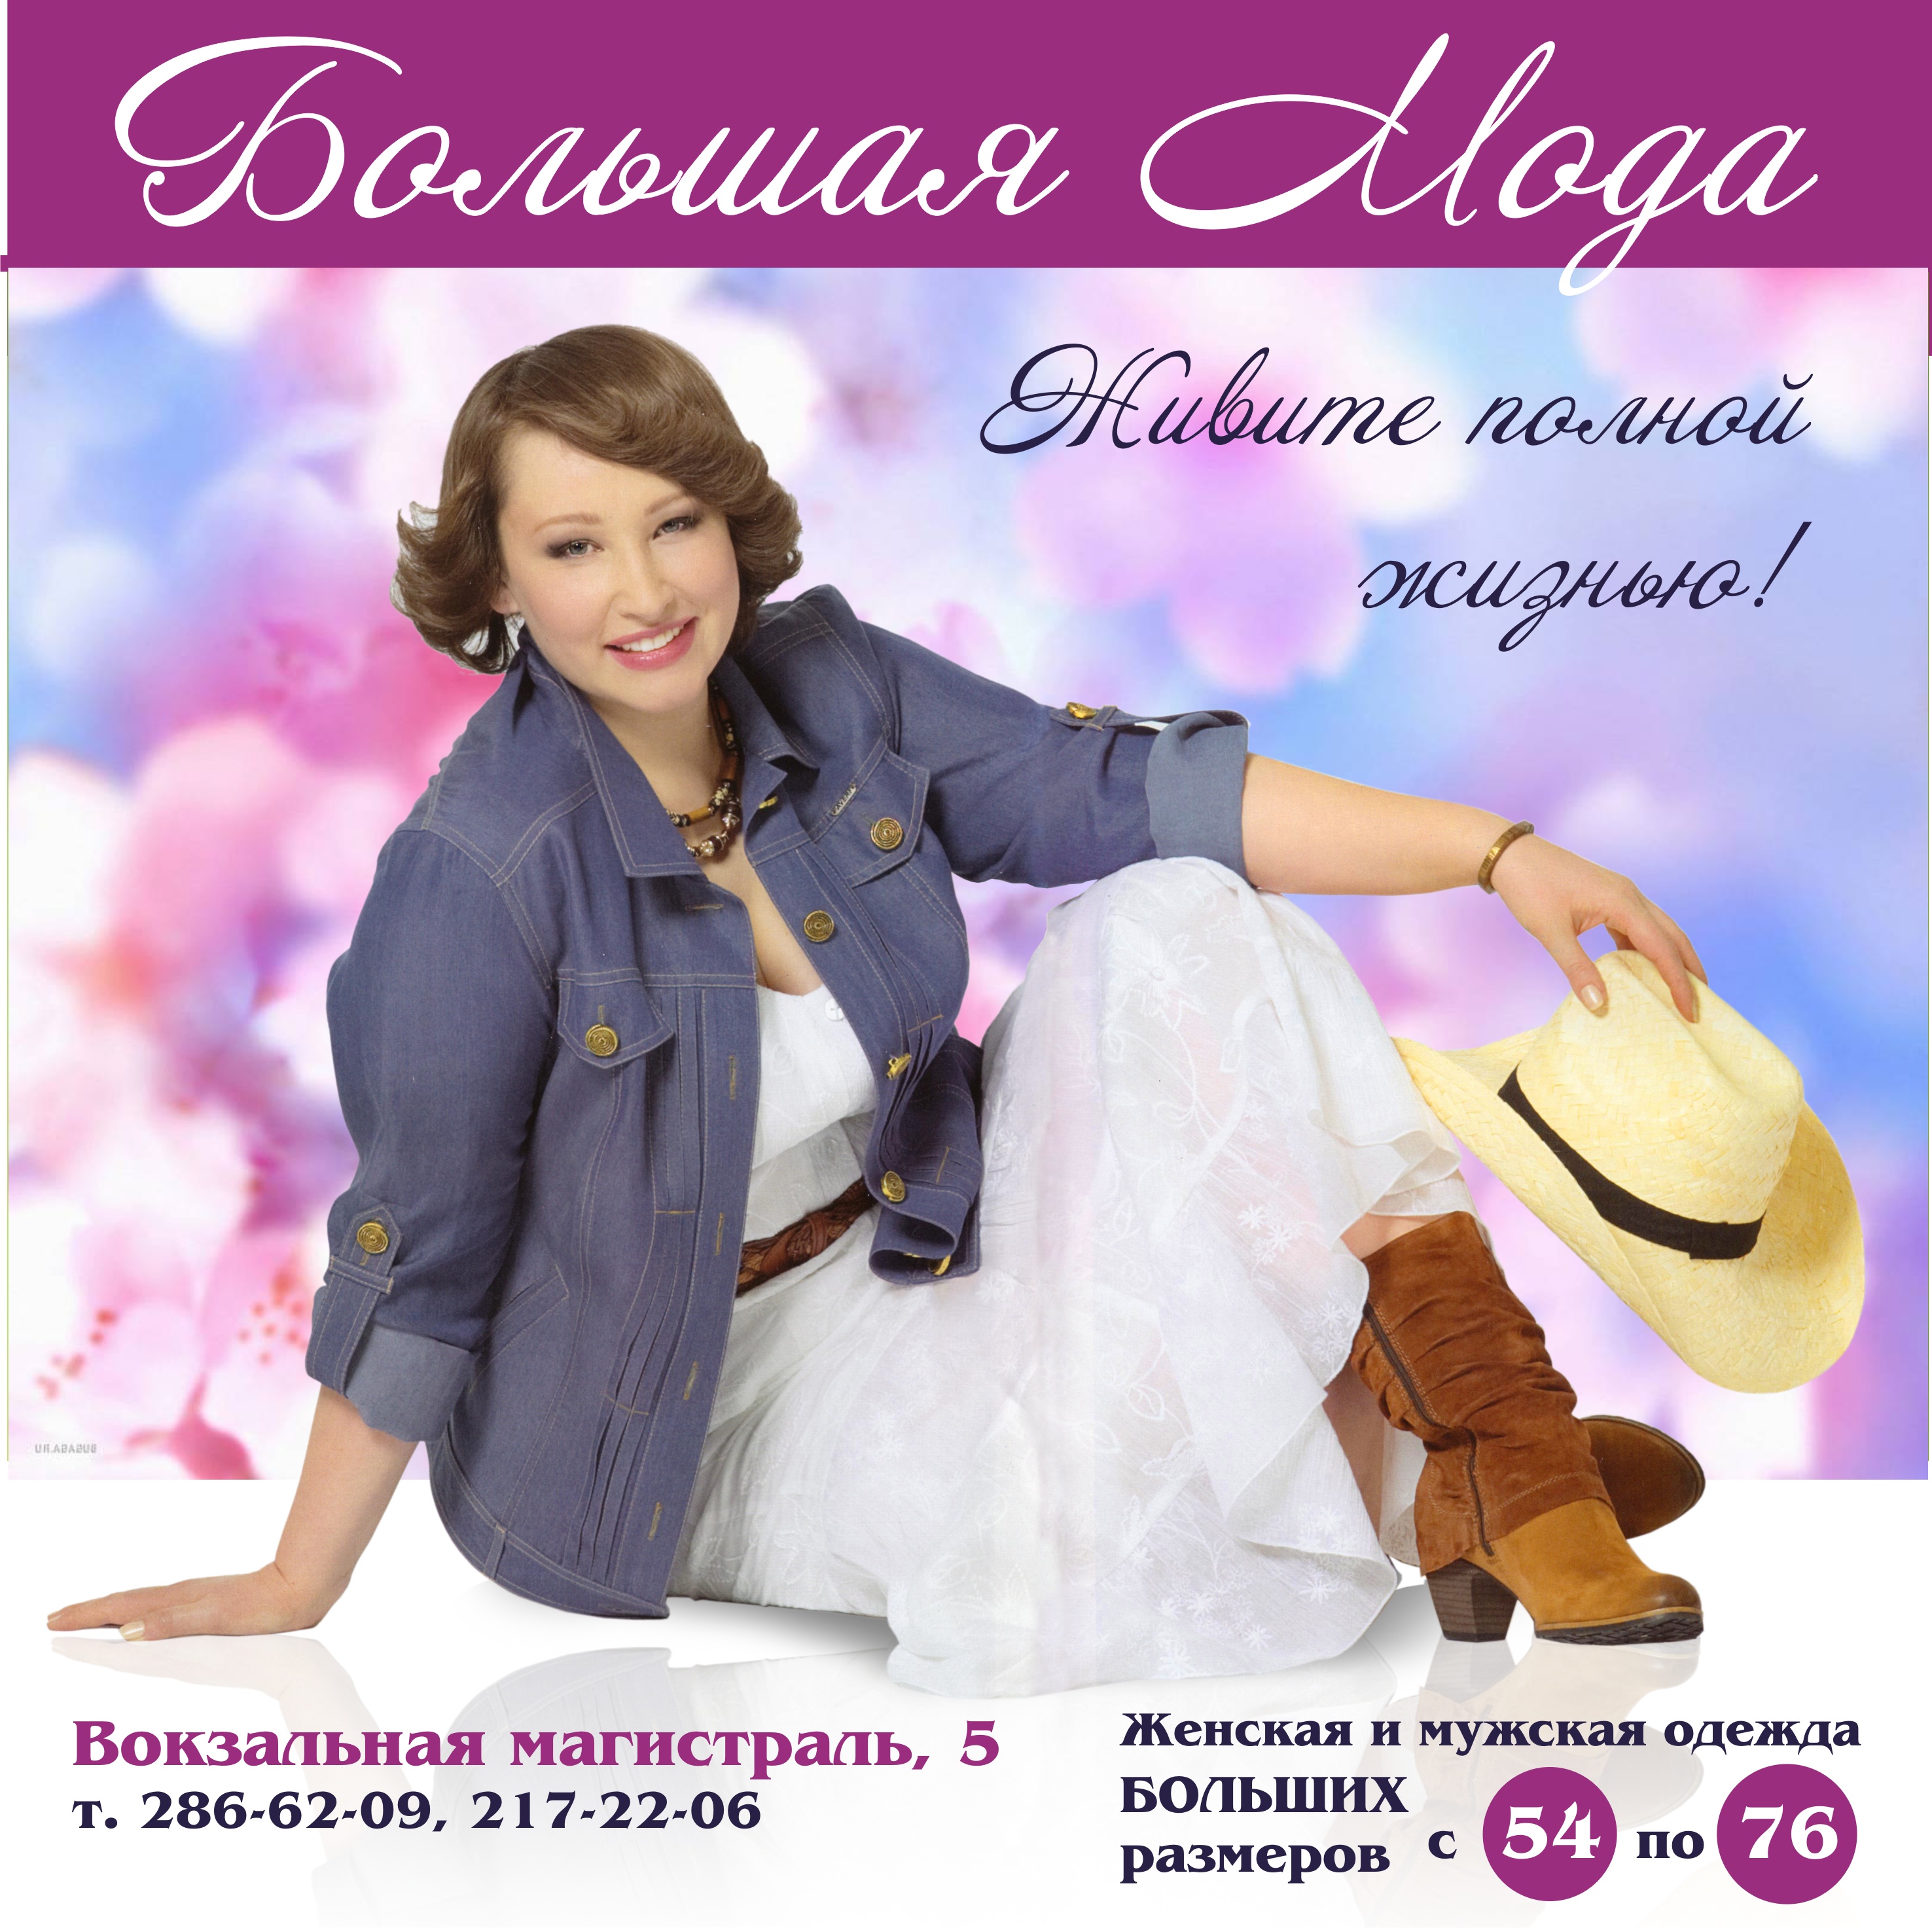 Магазин Одежды Богатырь В Новосибирске